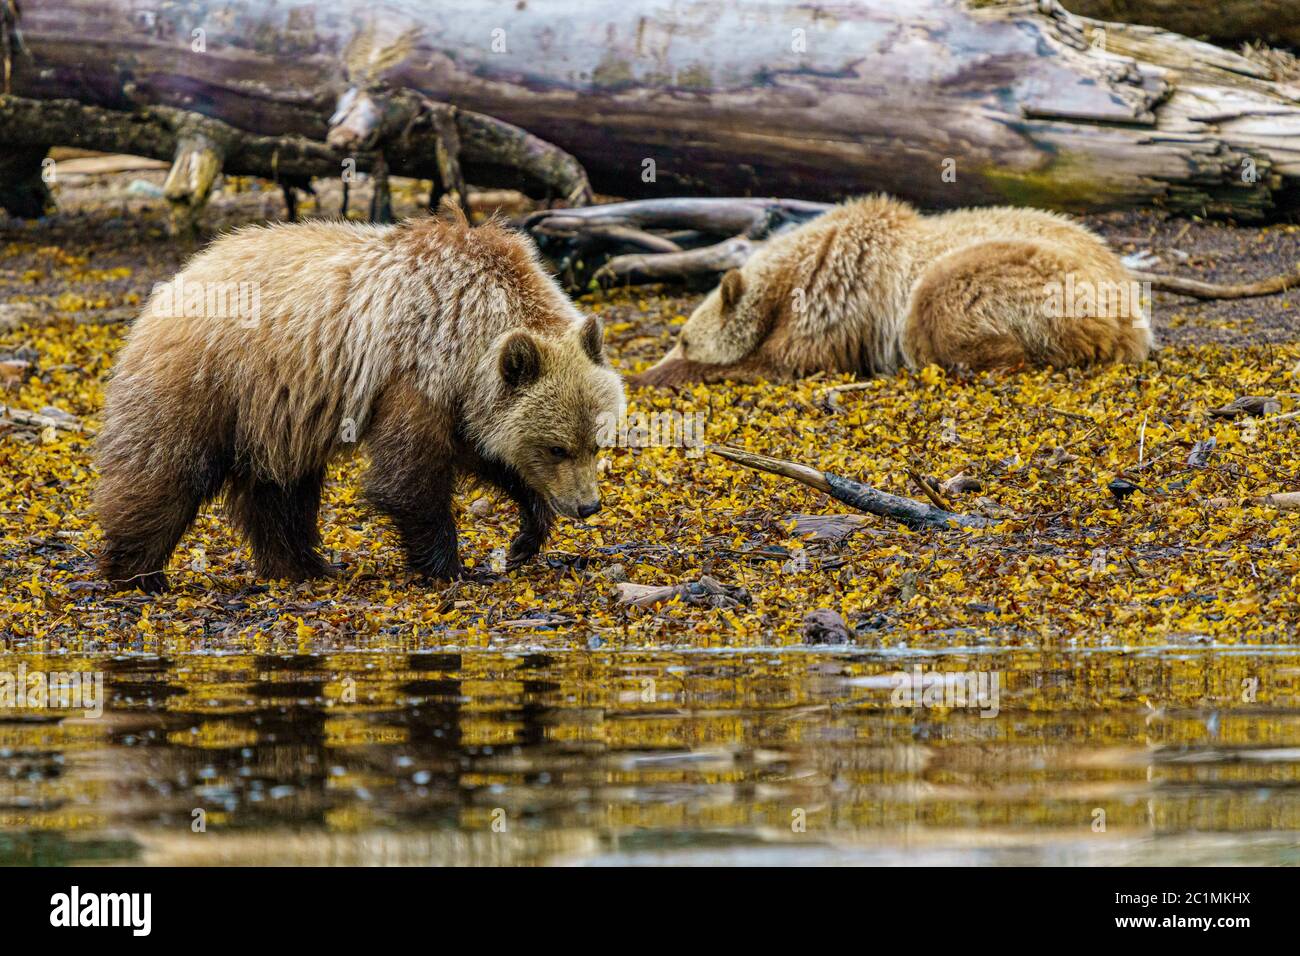 Cuccioli di orso grizzly che camminano e riposano lungo la zona intertidale, Glendale Cove, territorio delle prime Nazioni, Columbia Britannica, Canada Foto Stock